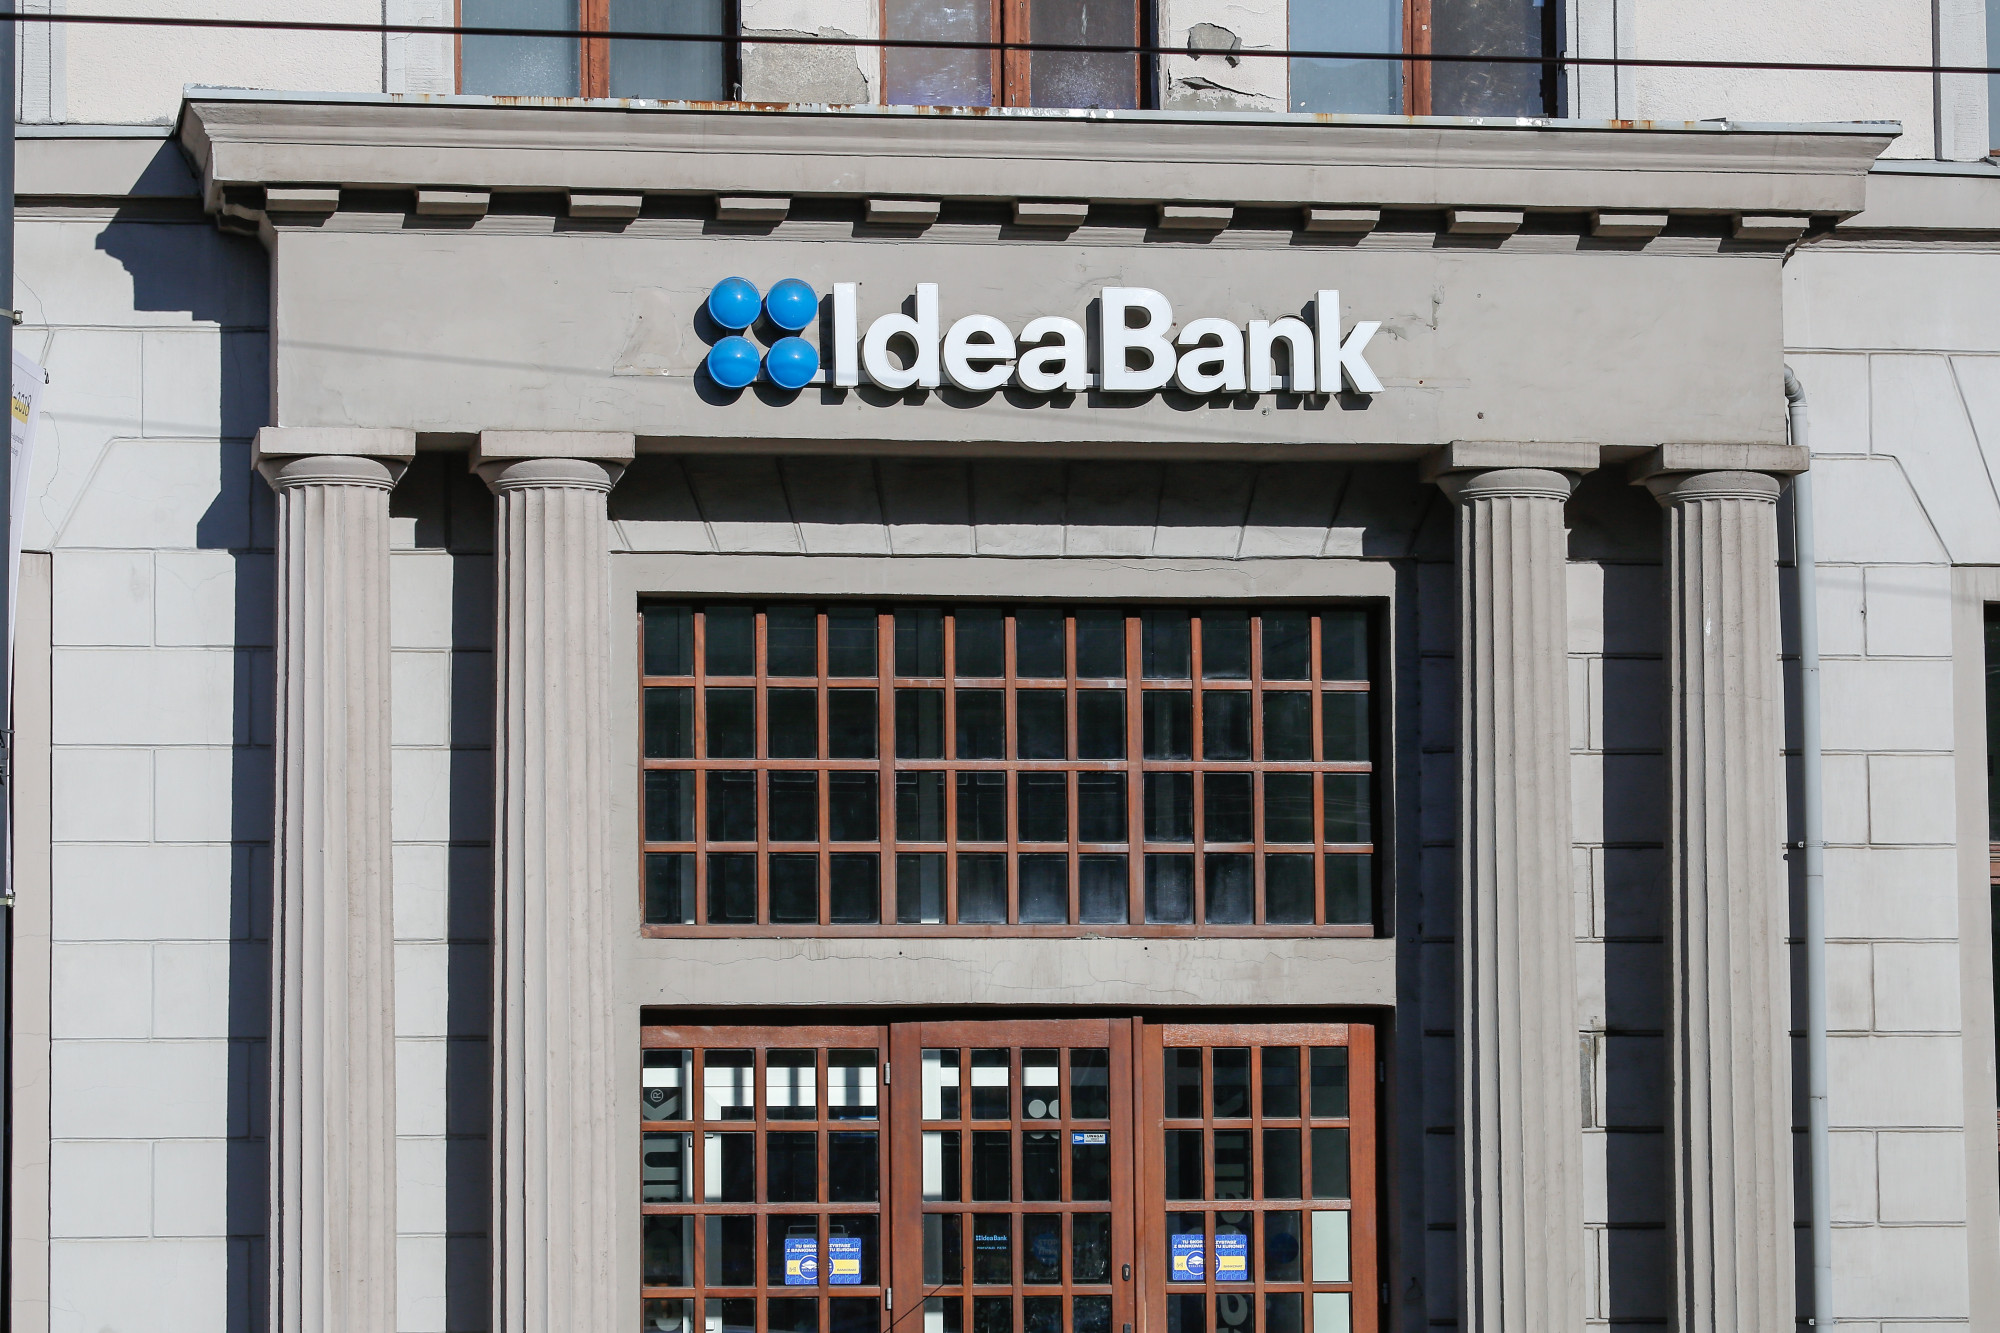 Sprzedaż Idea Banku - fundusz się wycofał. Reakcja na giełdzie